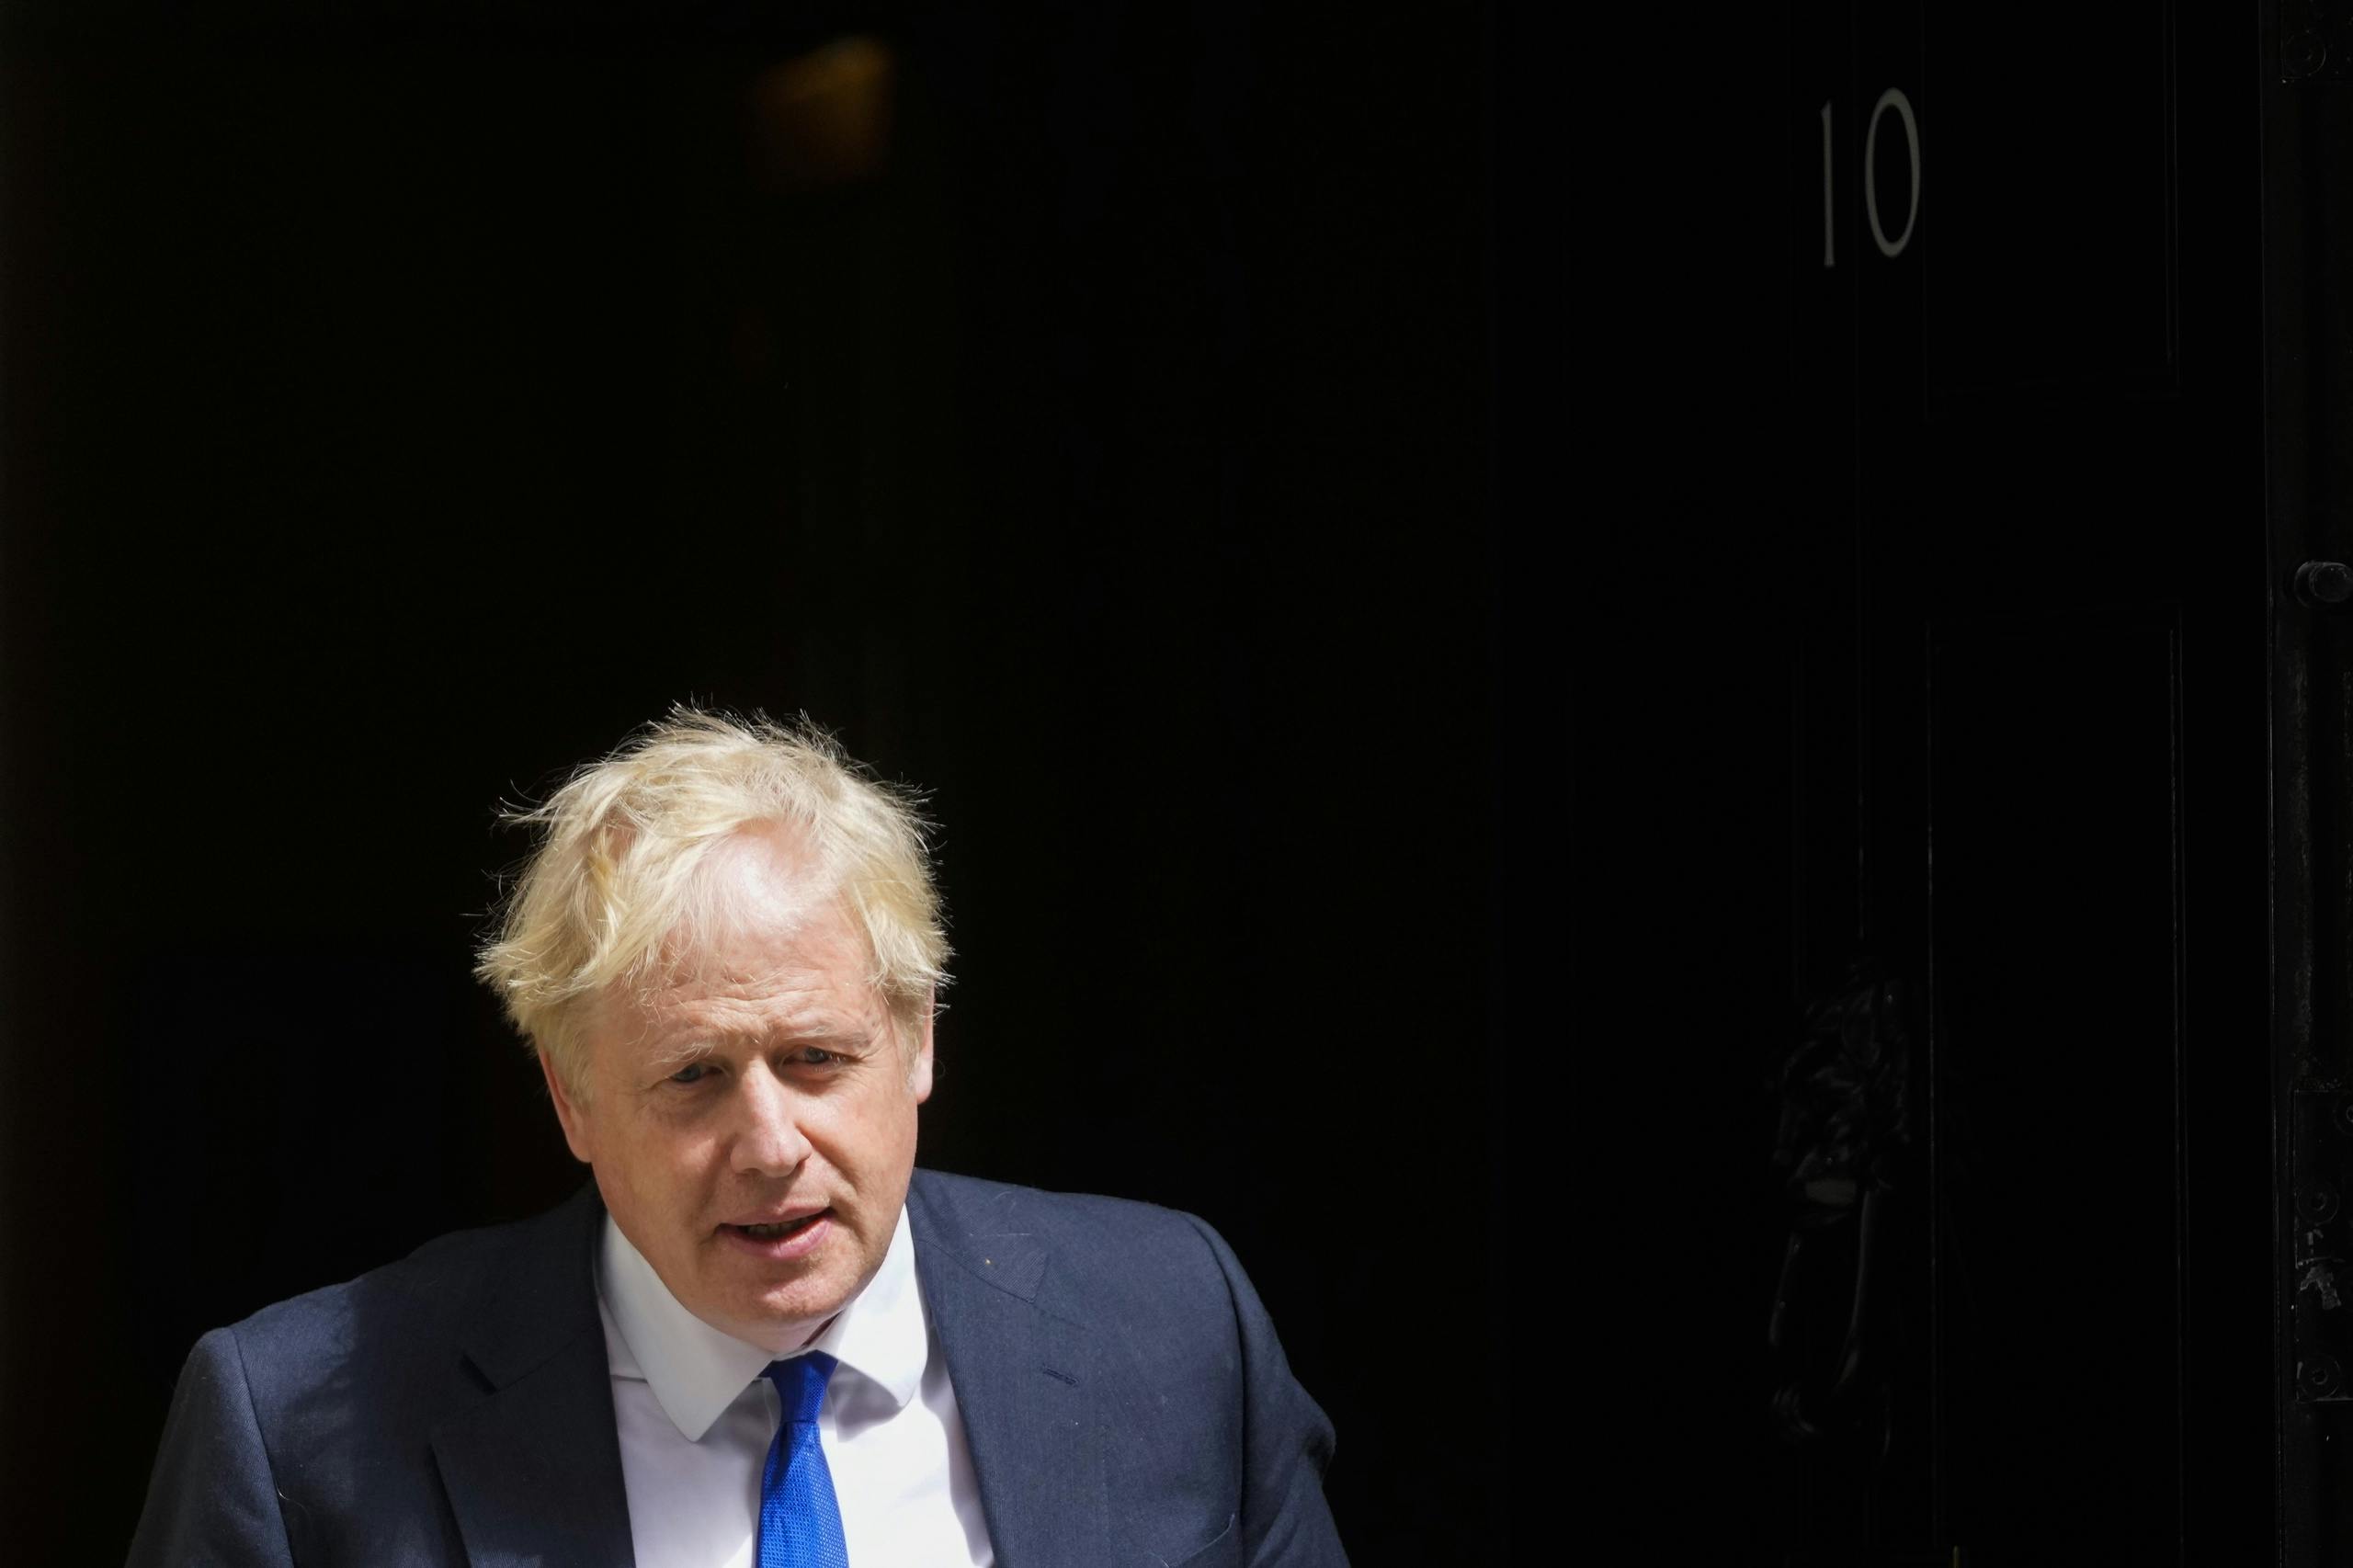 blog langsung |  Johnson mengkonfirmasi kepergiannya sebagai pemimpin Inggris;  Bukan pidato yang rendah hati